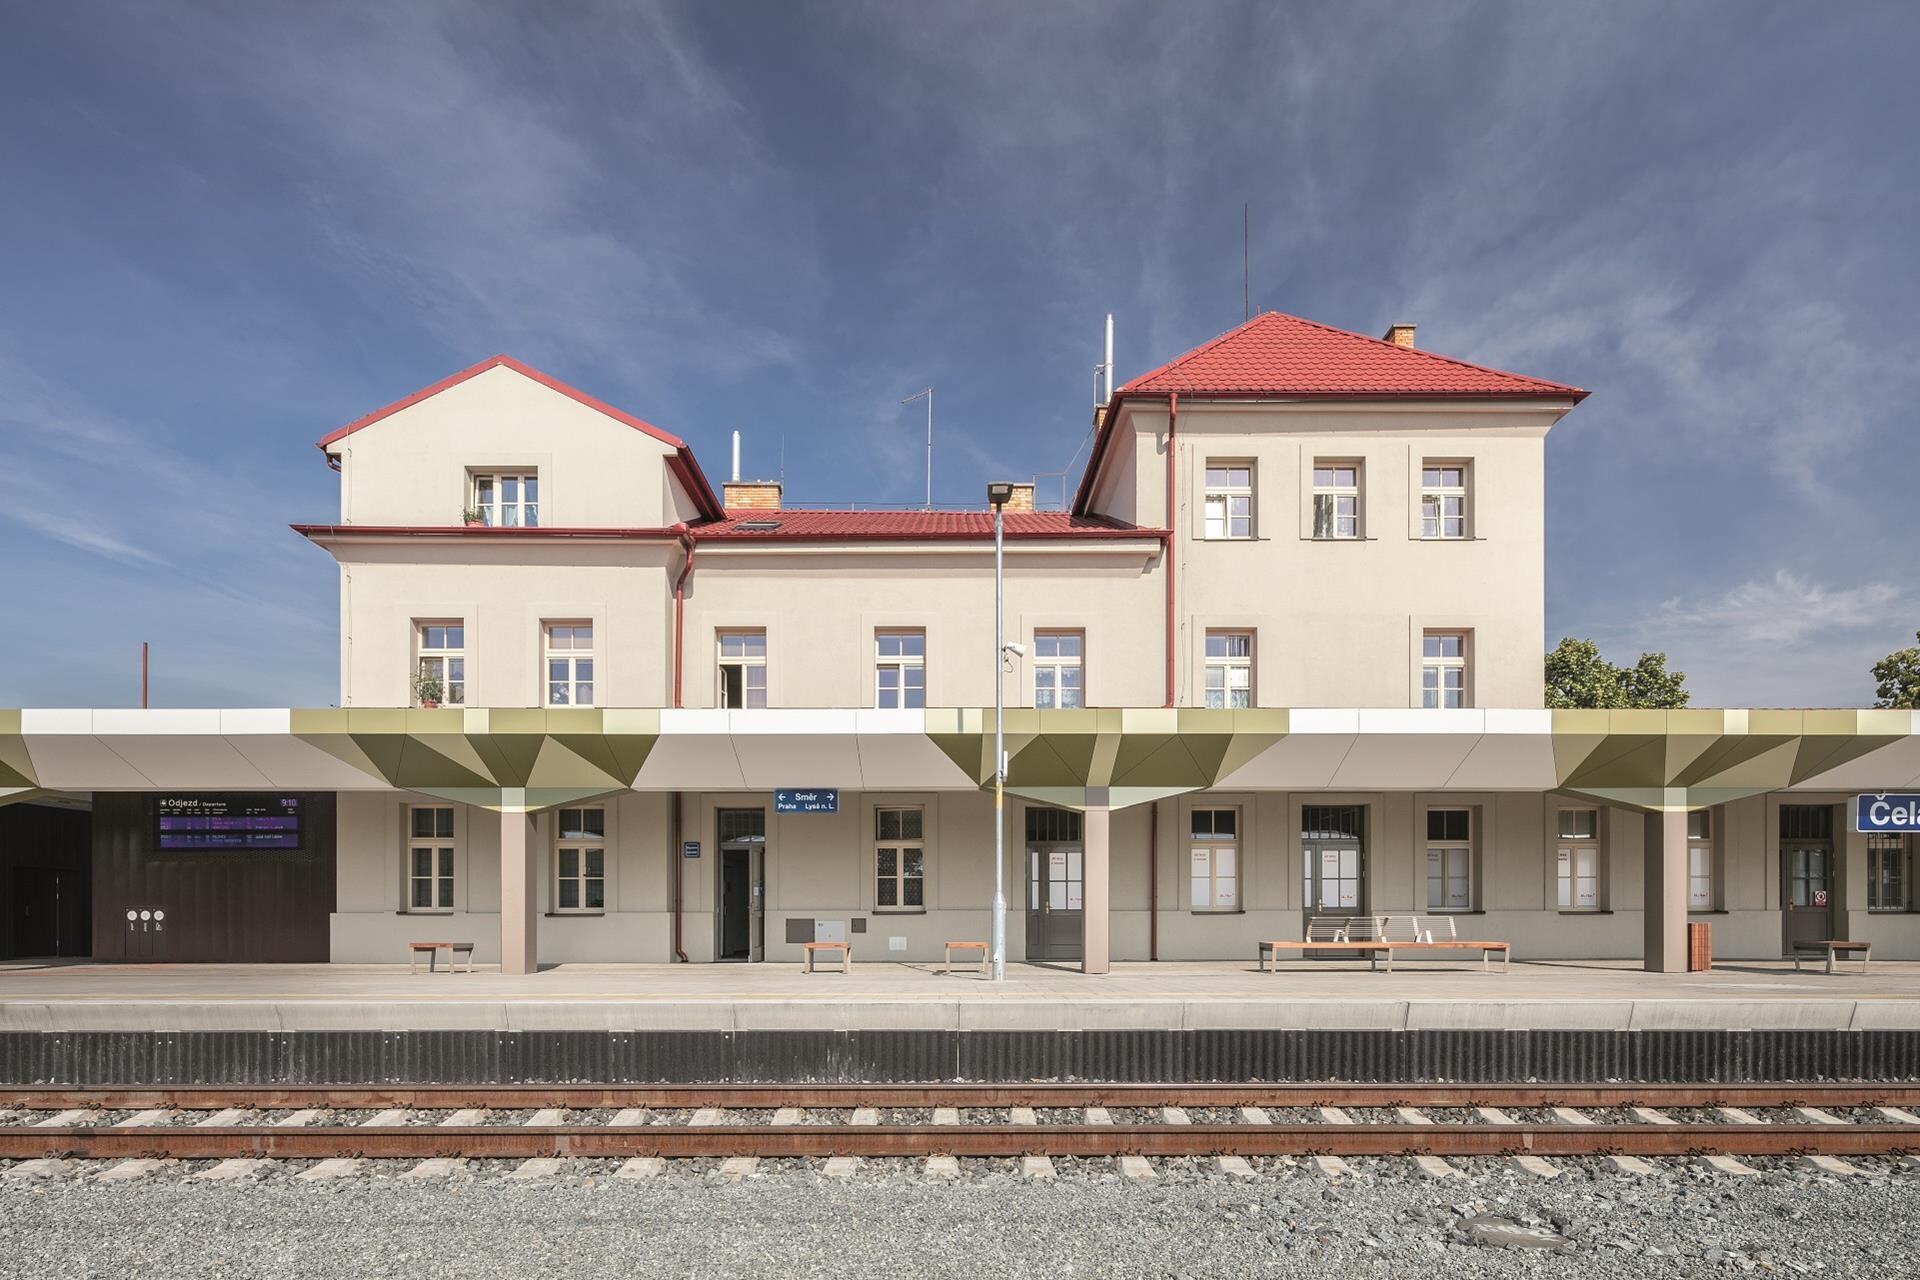 Příští zastávka: Architektura a design. Vystupte na nejkrásnějších nádražích v Česku